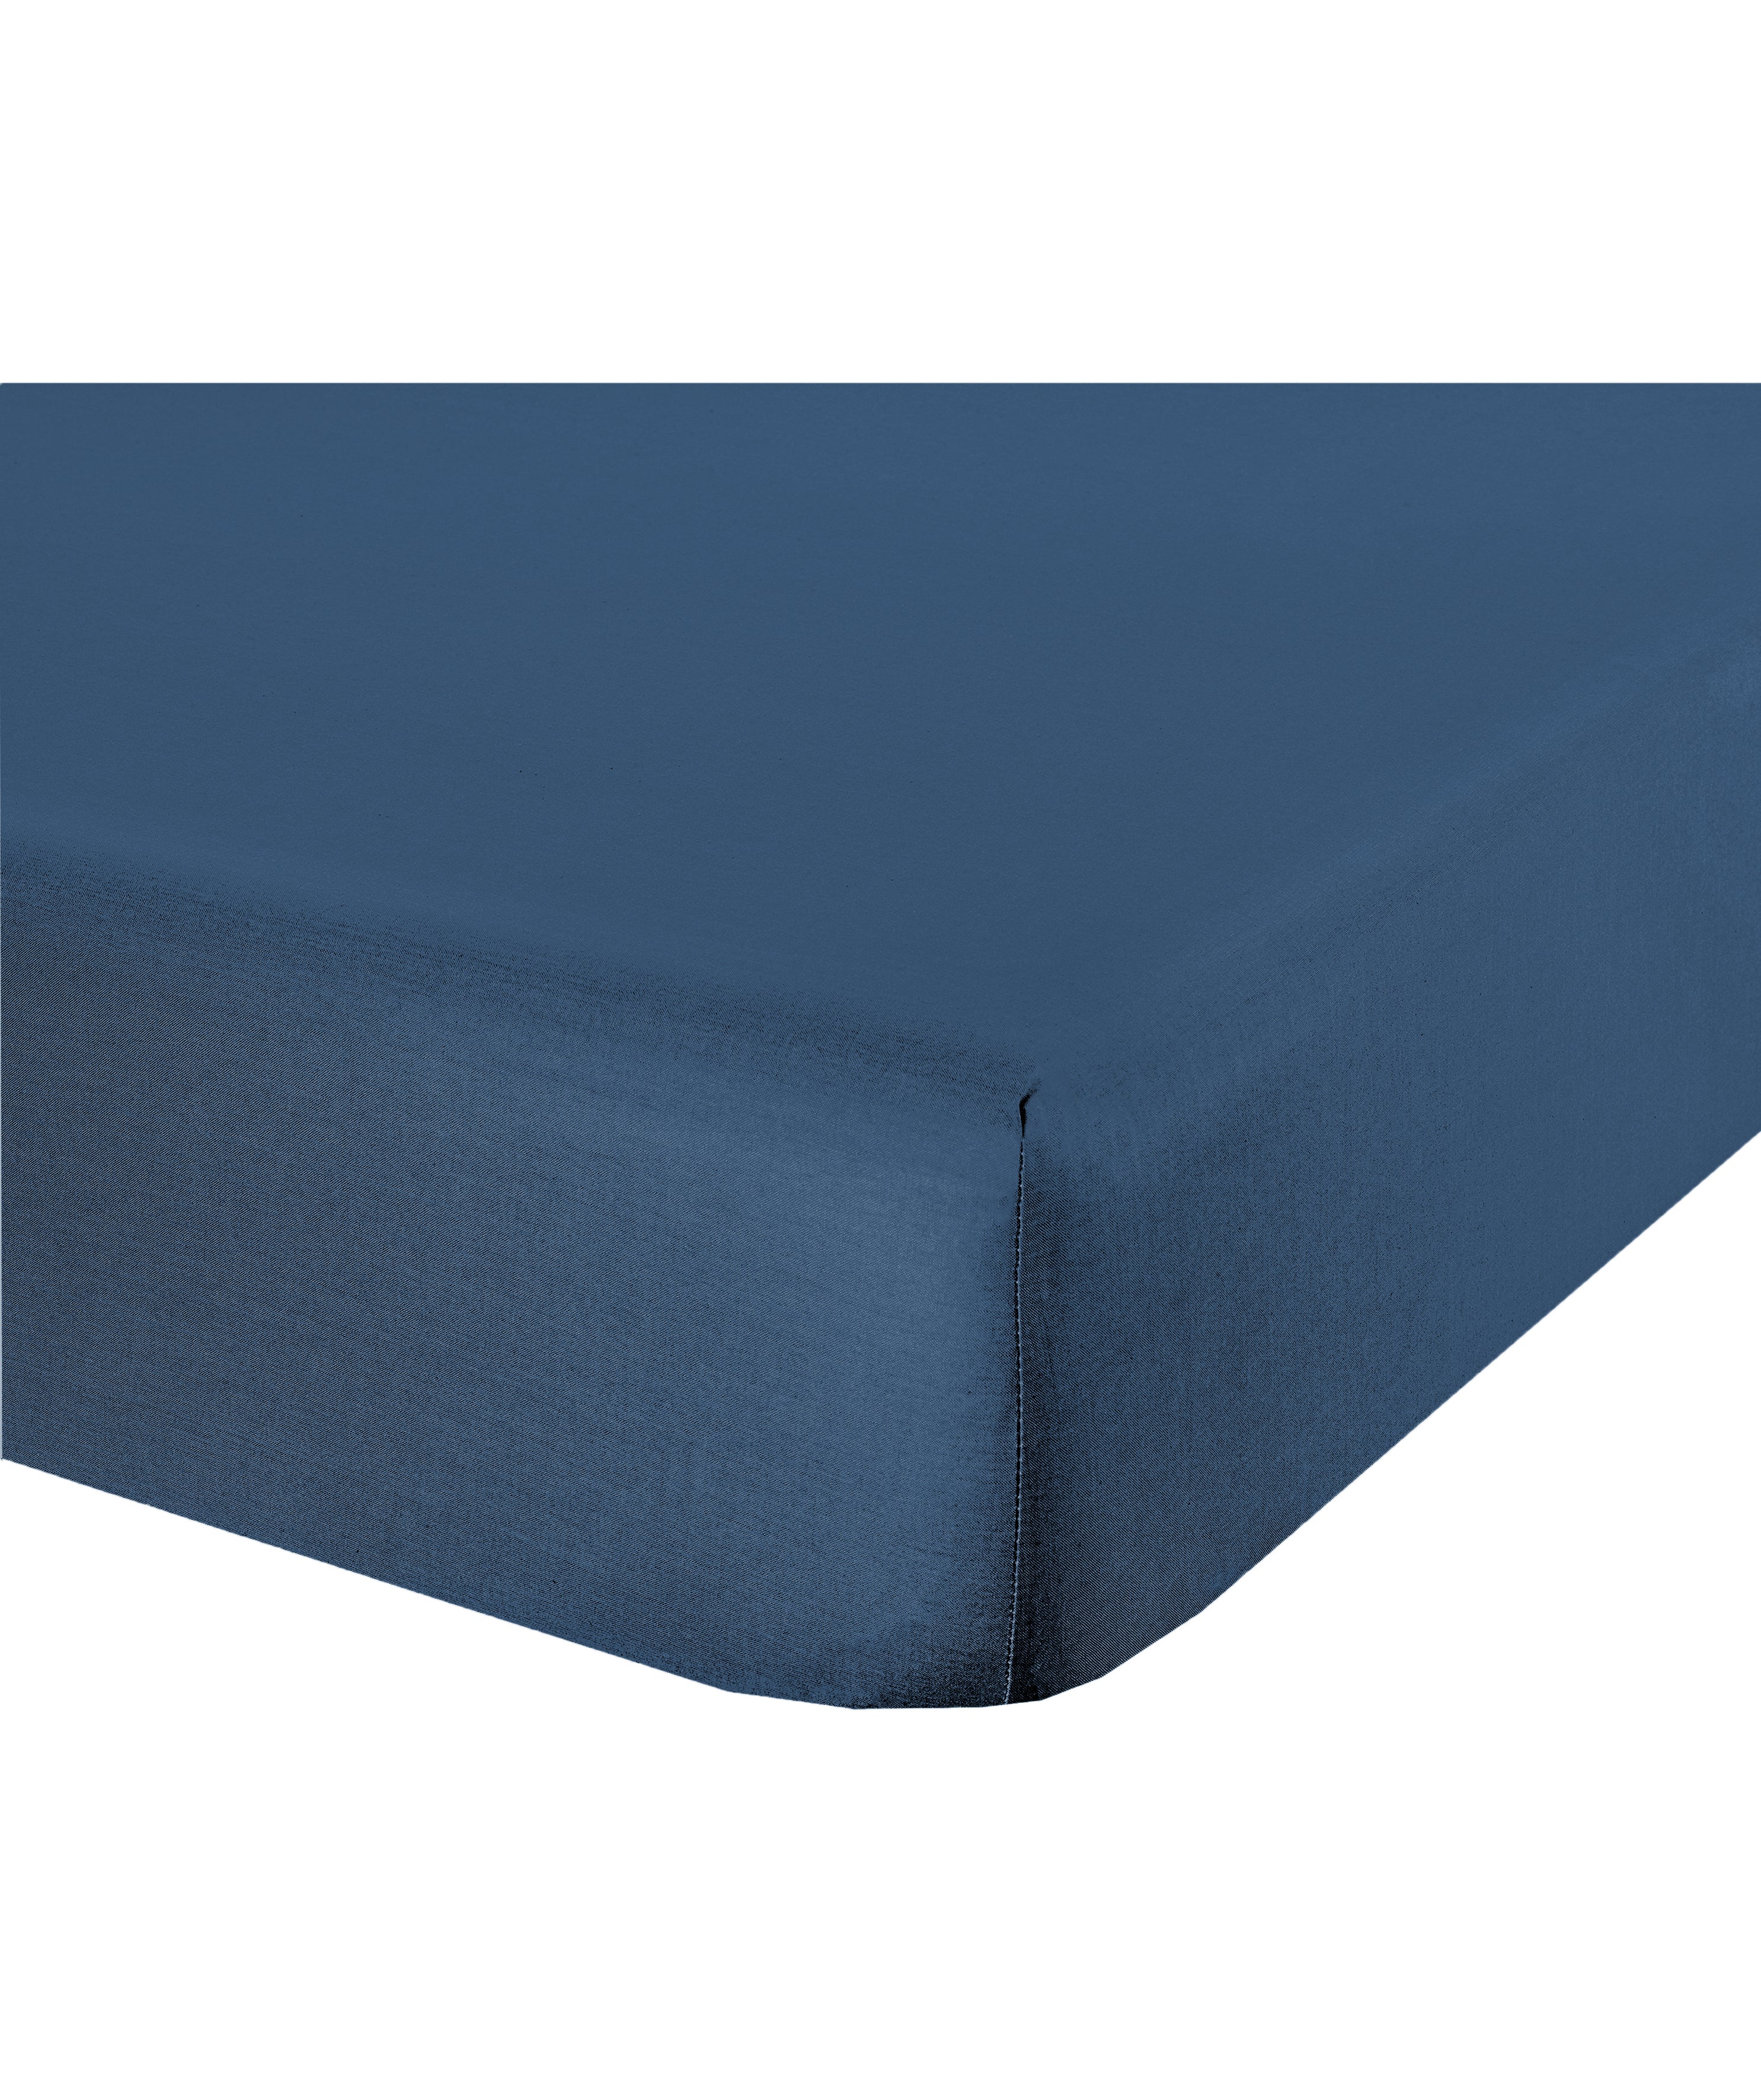 Lenzuolo letto sotto lenzuola con angoli flanella caldo cotone 100% cotone Made in Italy BLU